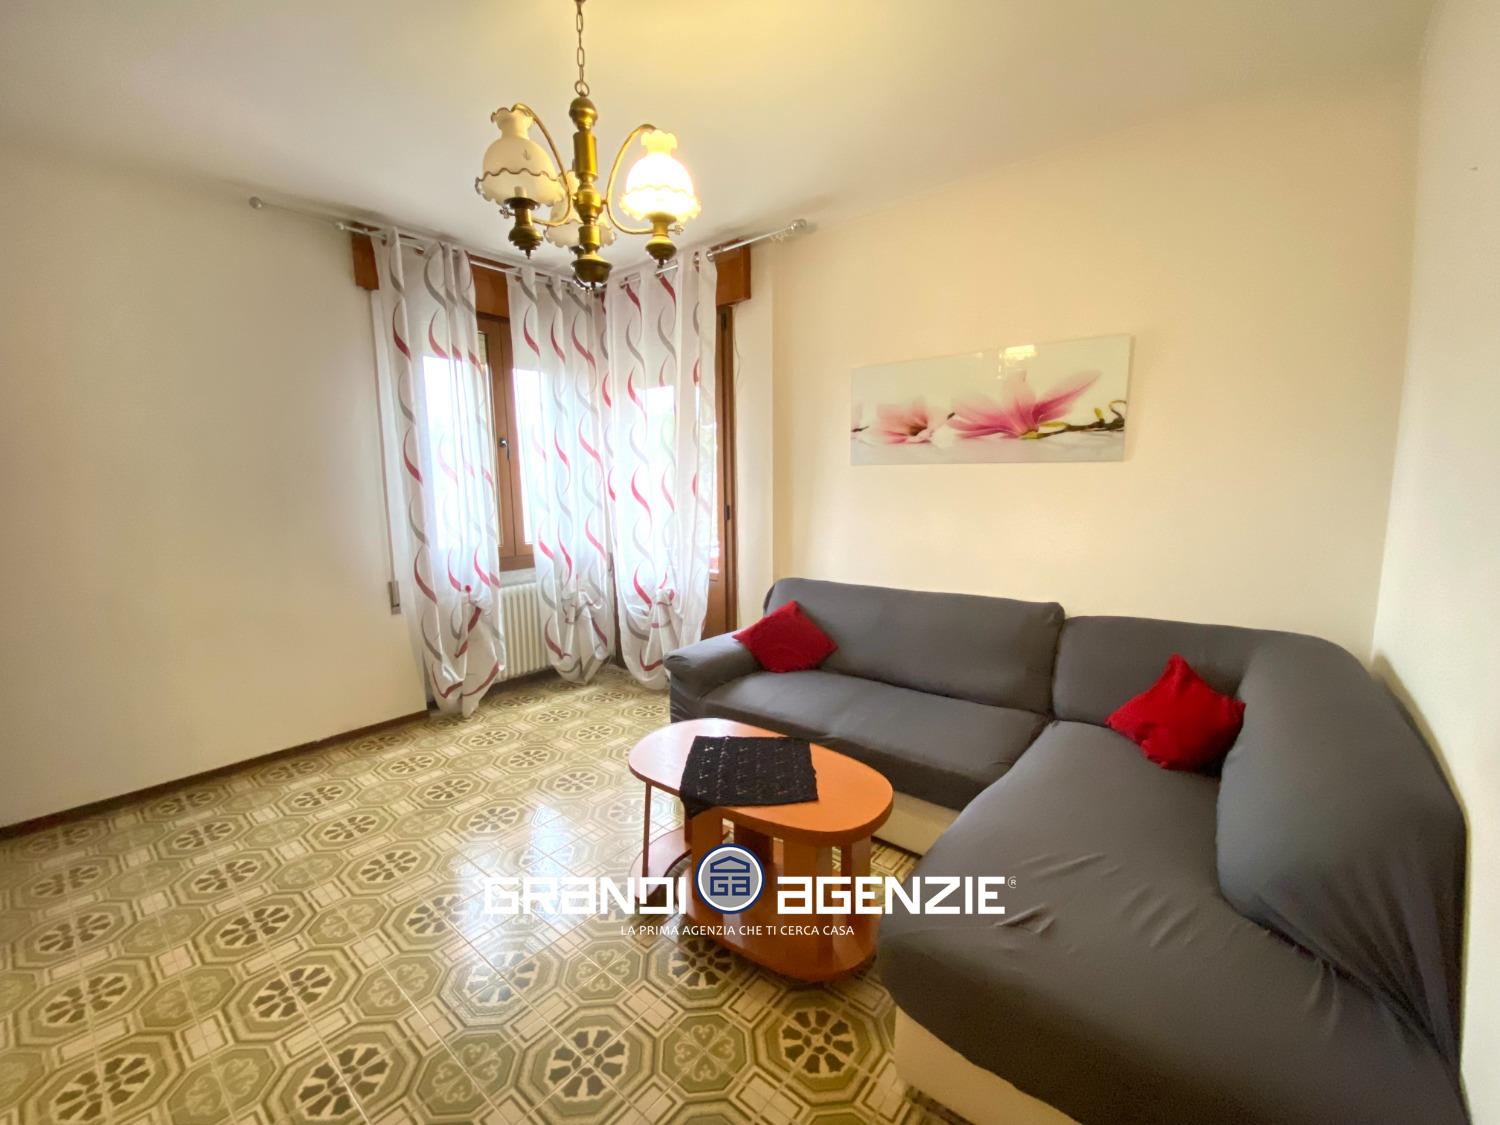 Appartamento in vendita a Spresiano, 2 locali, prezzo € 75.000 | PortaleAgenzieImmobiliari.it